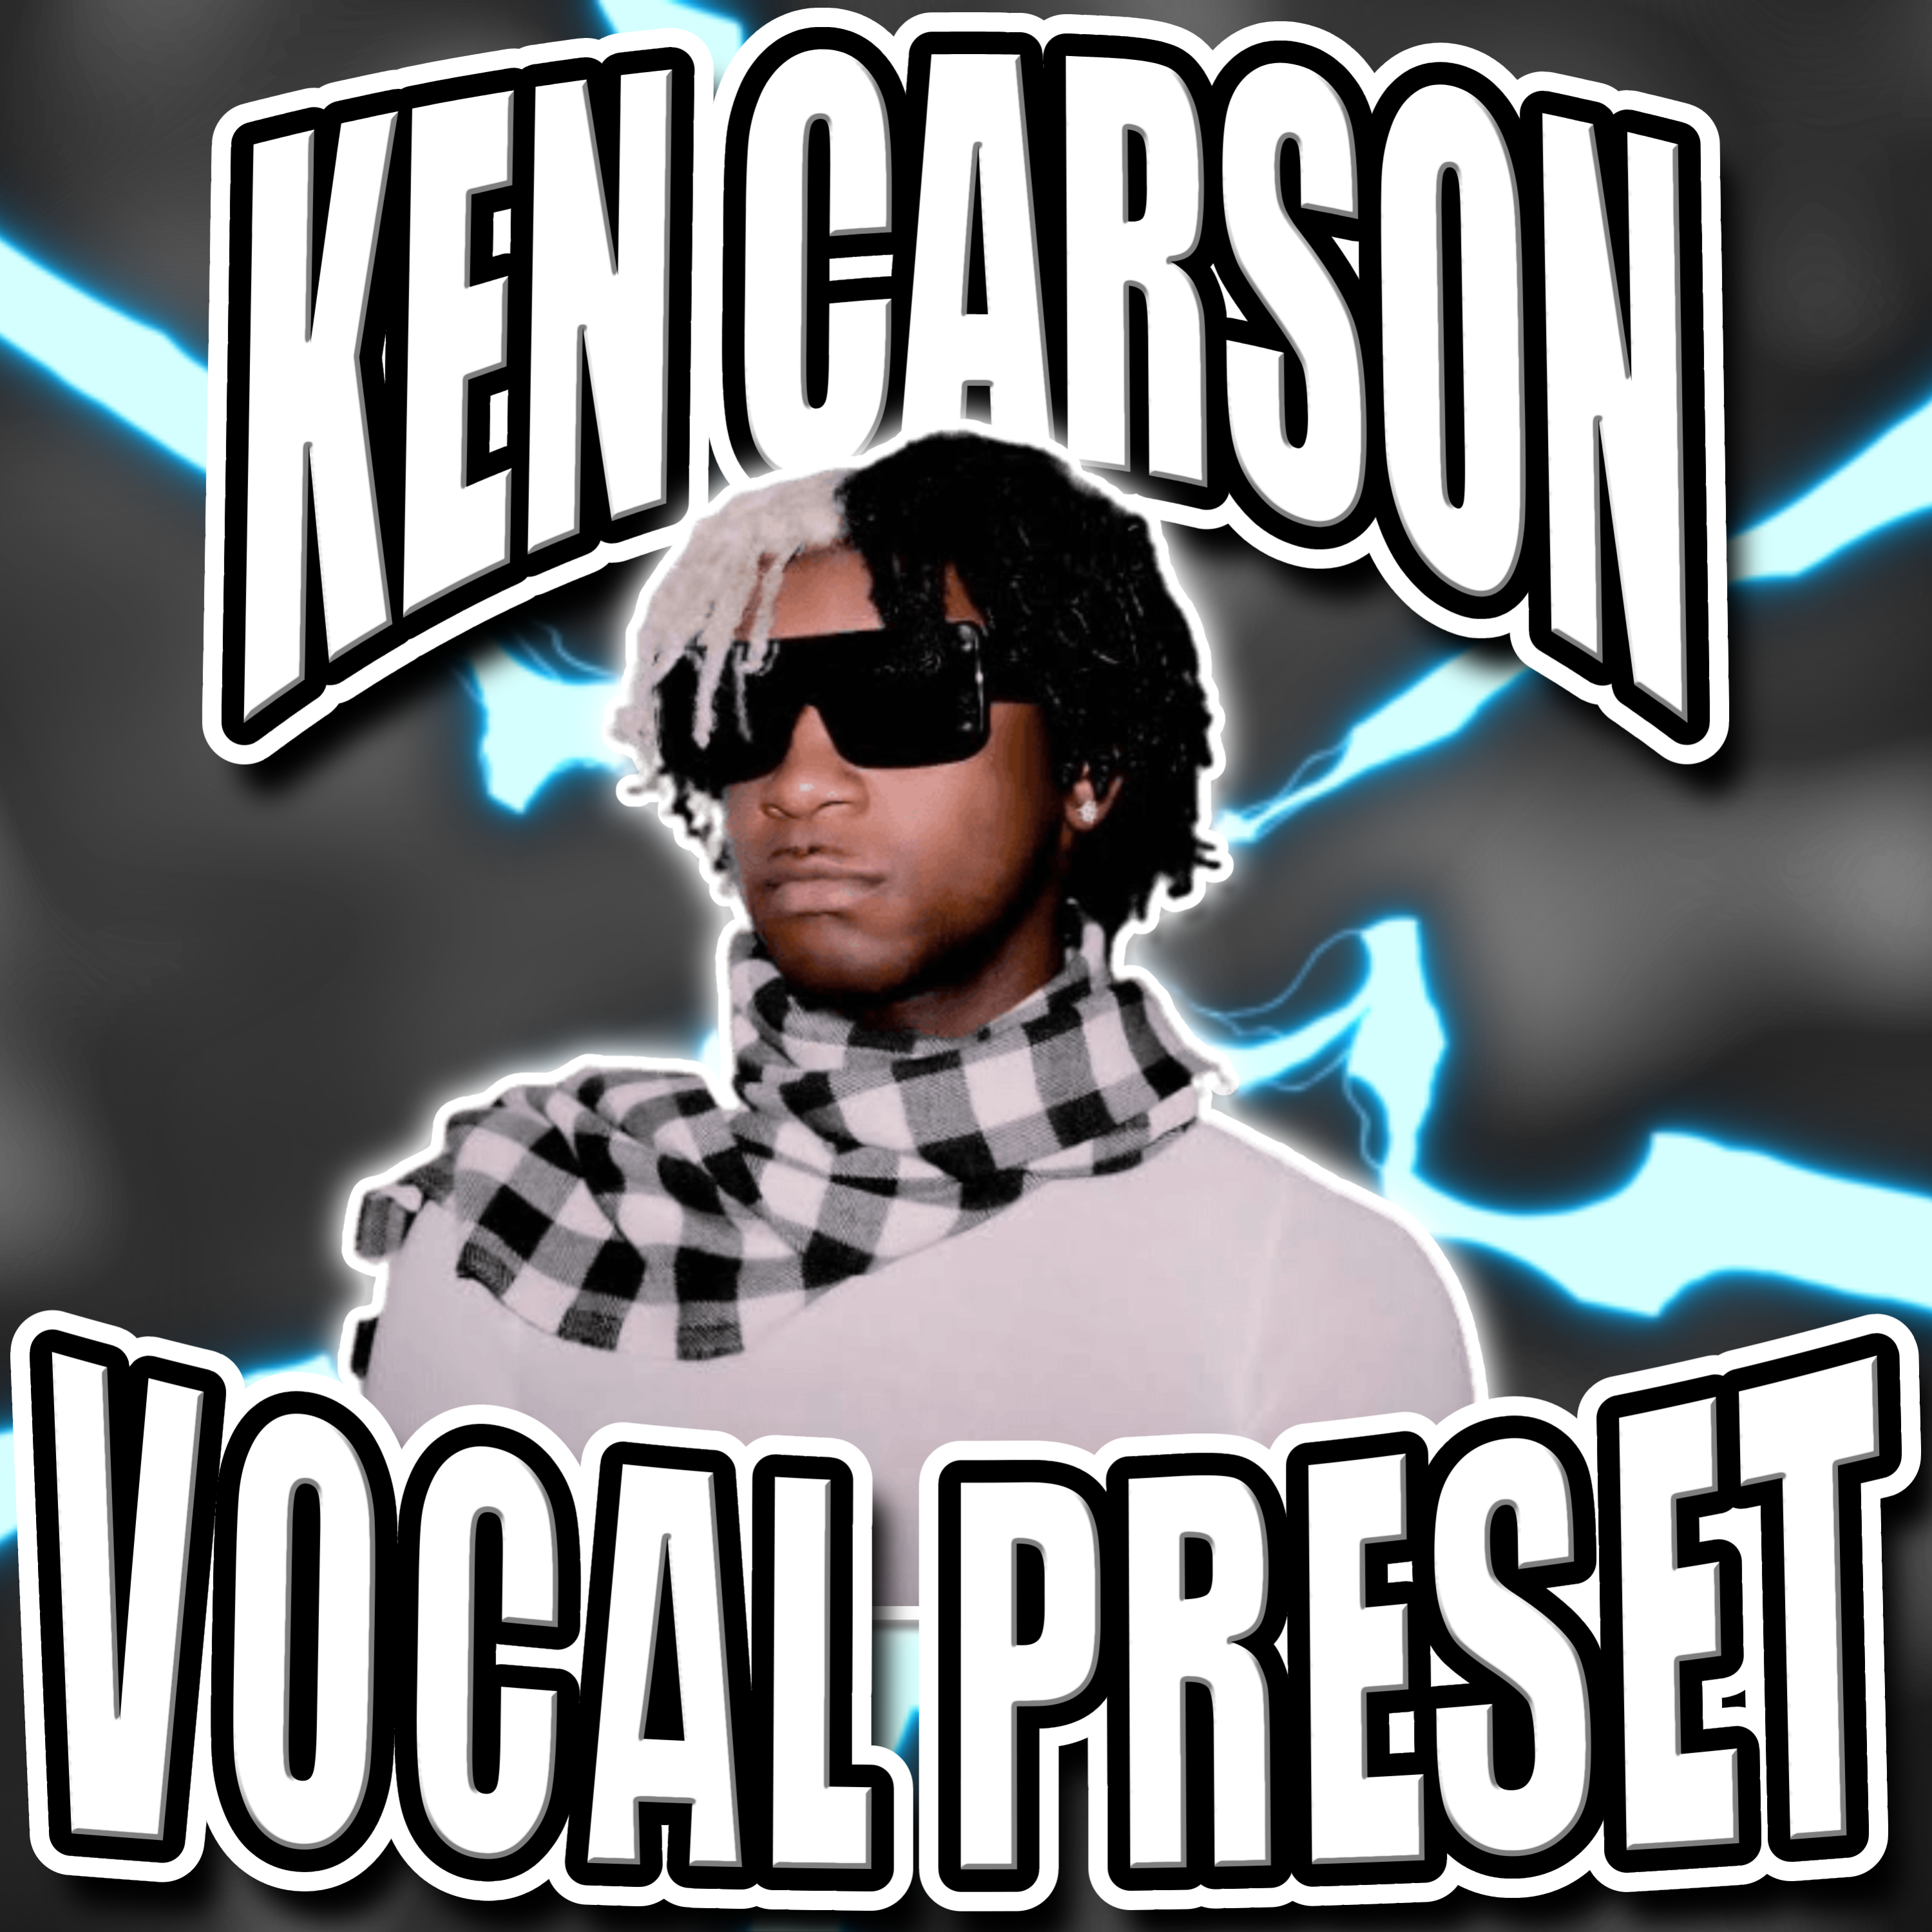 The Ken Carson Vocal Preset